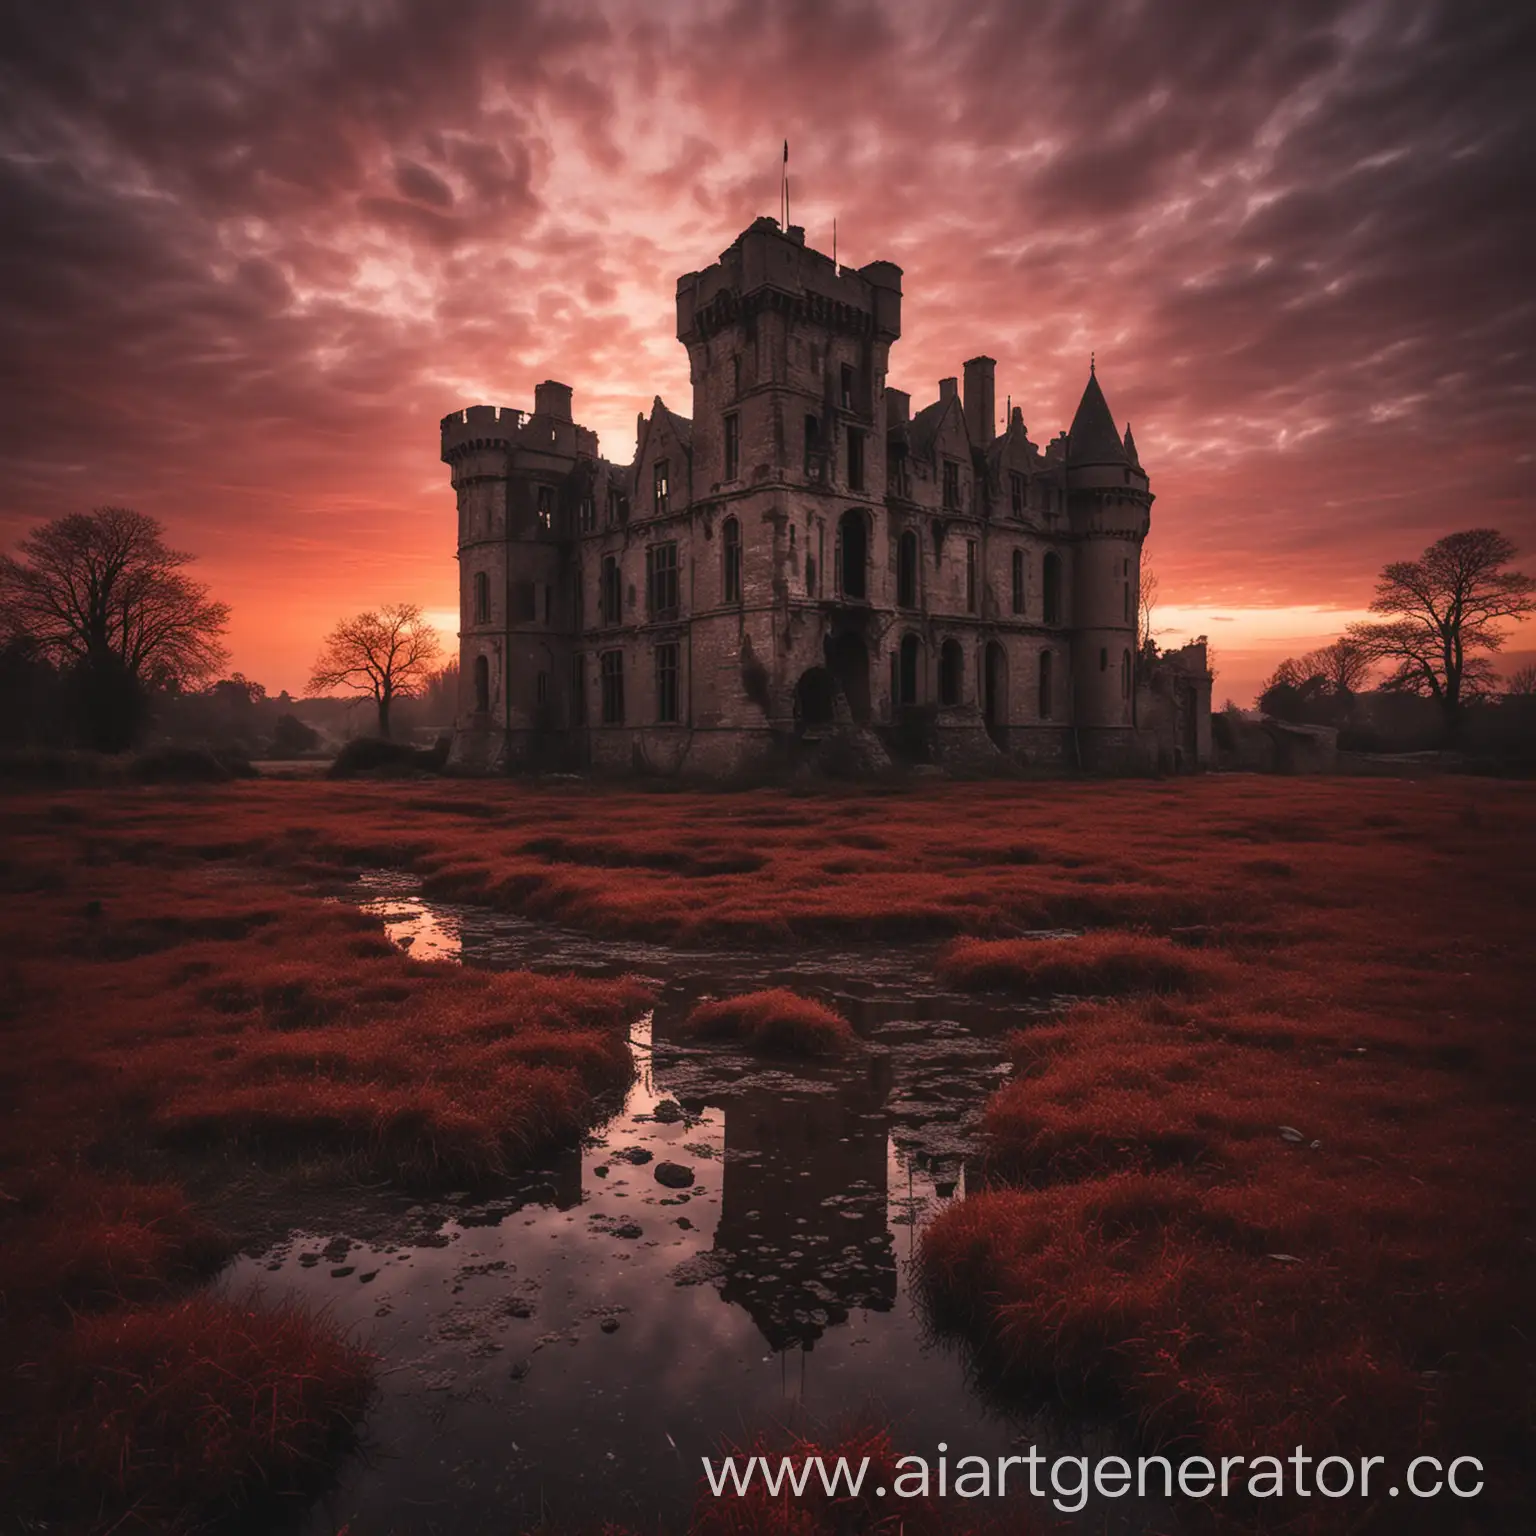 старый заброшенный замок, жуткая атмосфера, вечер, кроваво-красный закат, Англия
